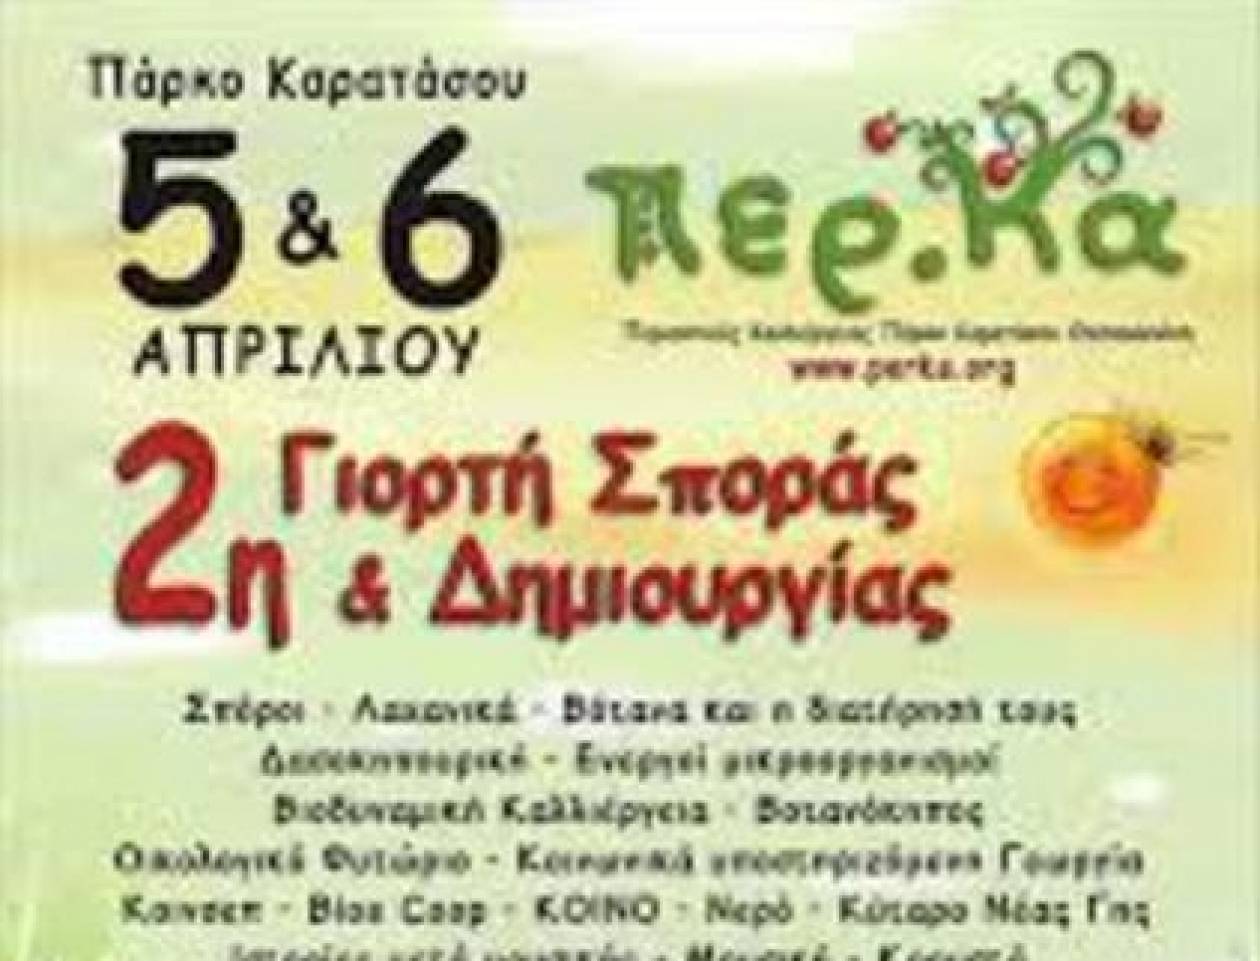 Δεύτερη γιορτή σποράς και δημιουργίας στη Θεσσαλονίκη